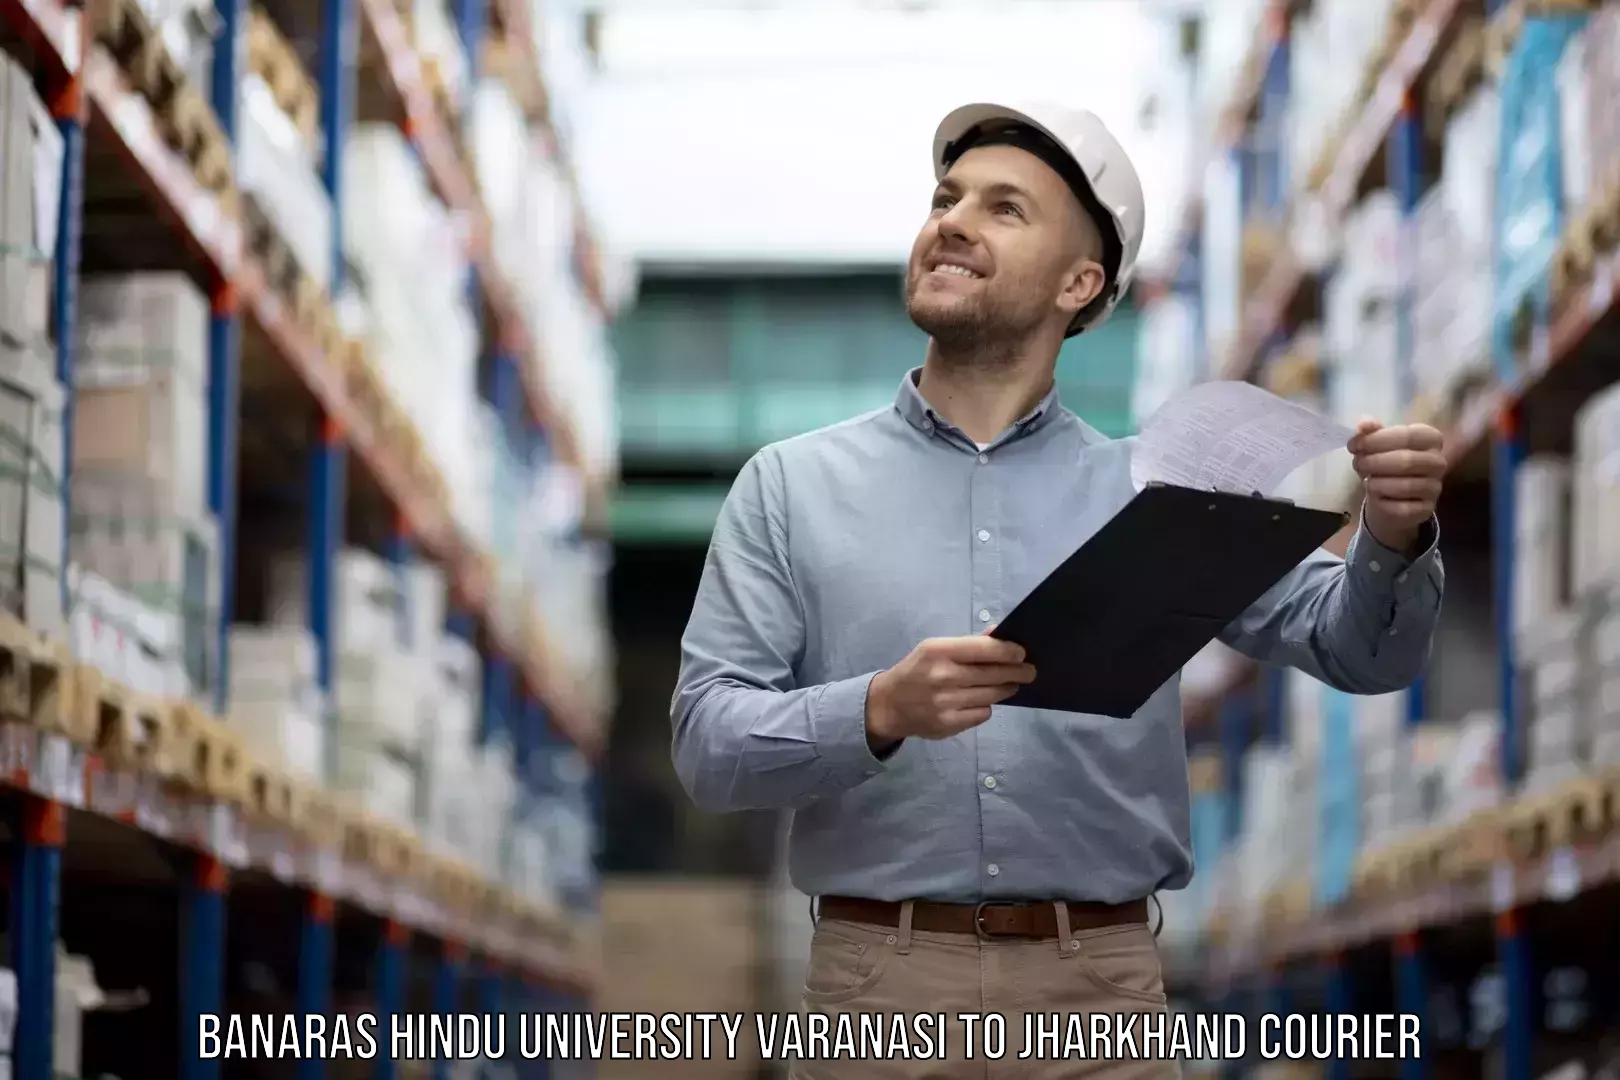 Expert household movers in Banaras Hindu University Varanasi to Chaibasa